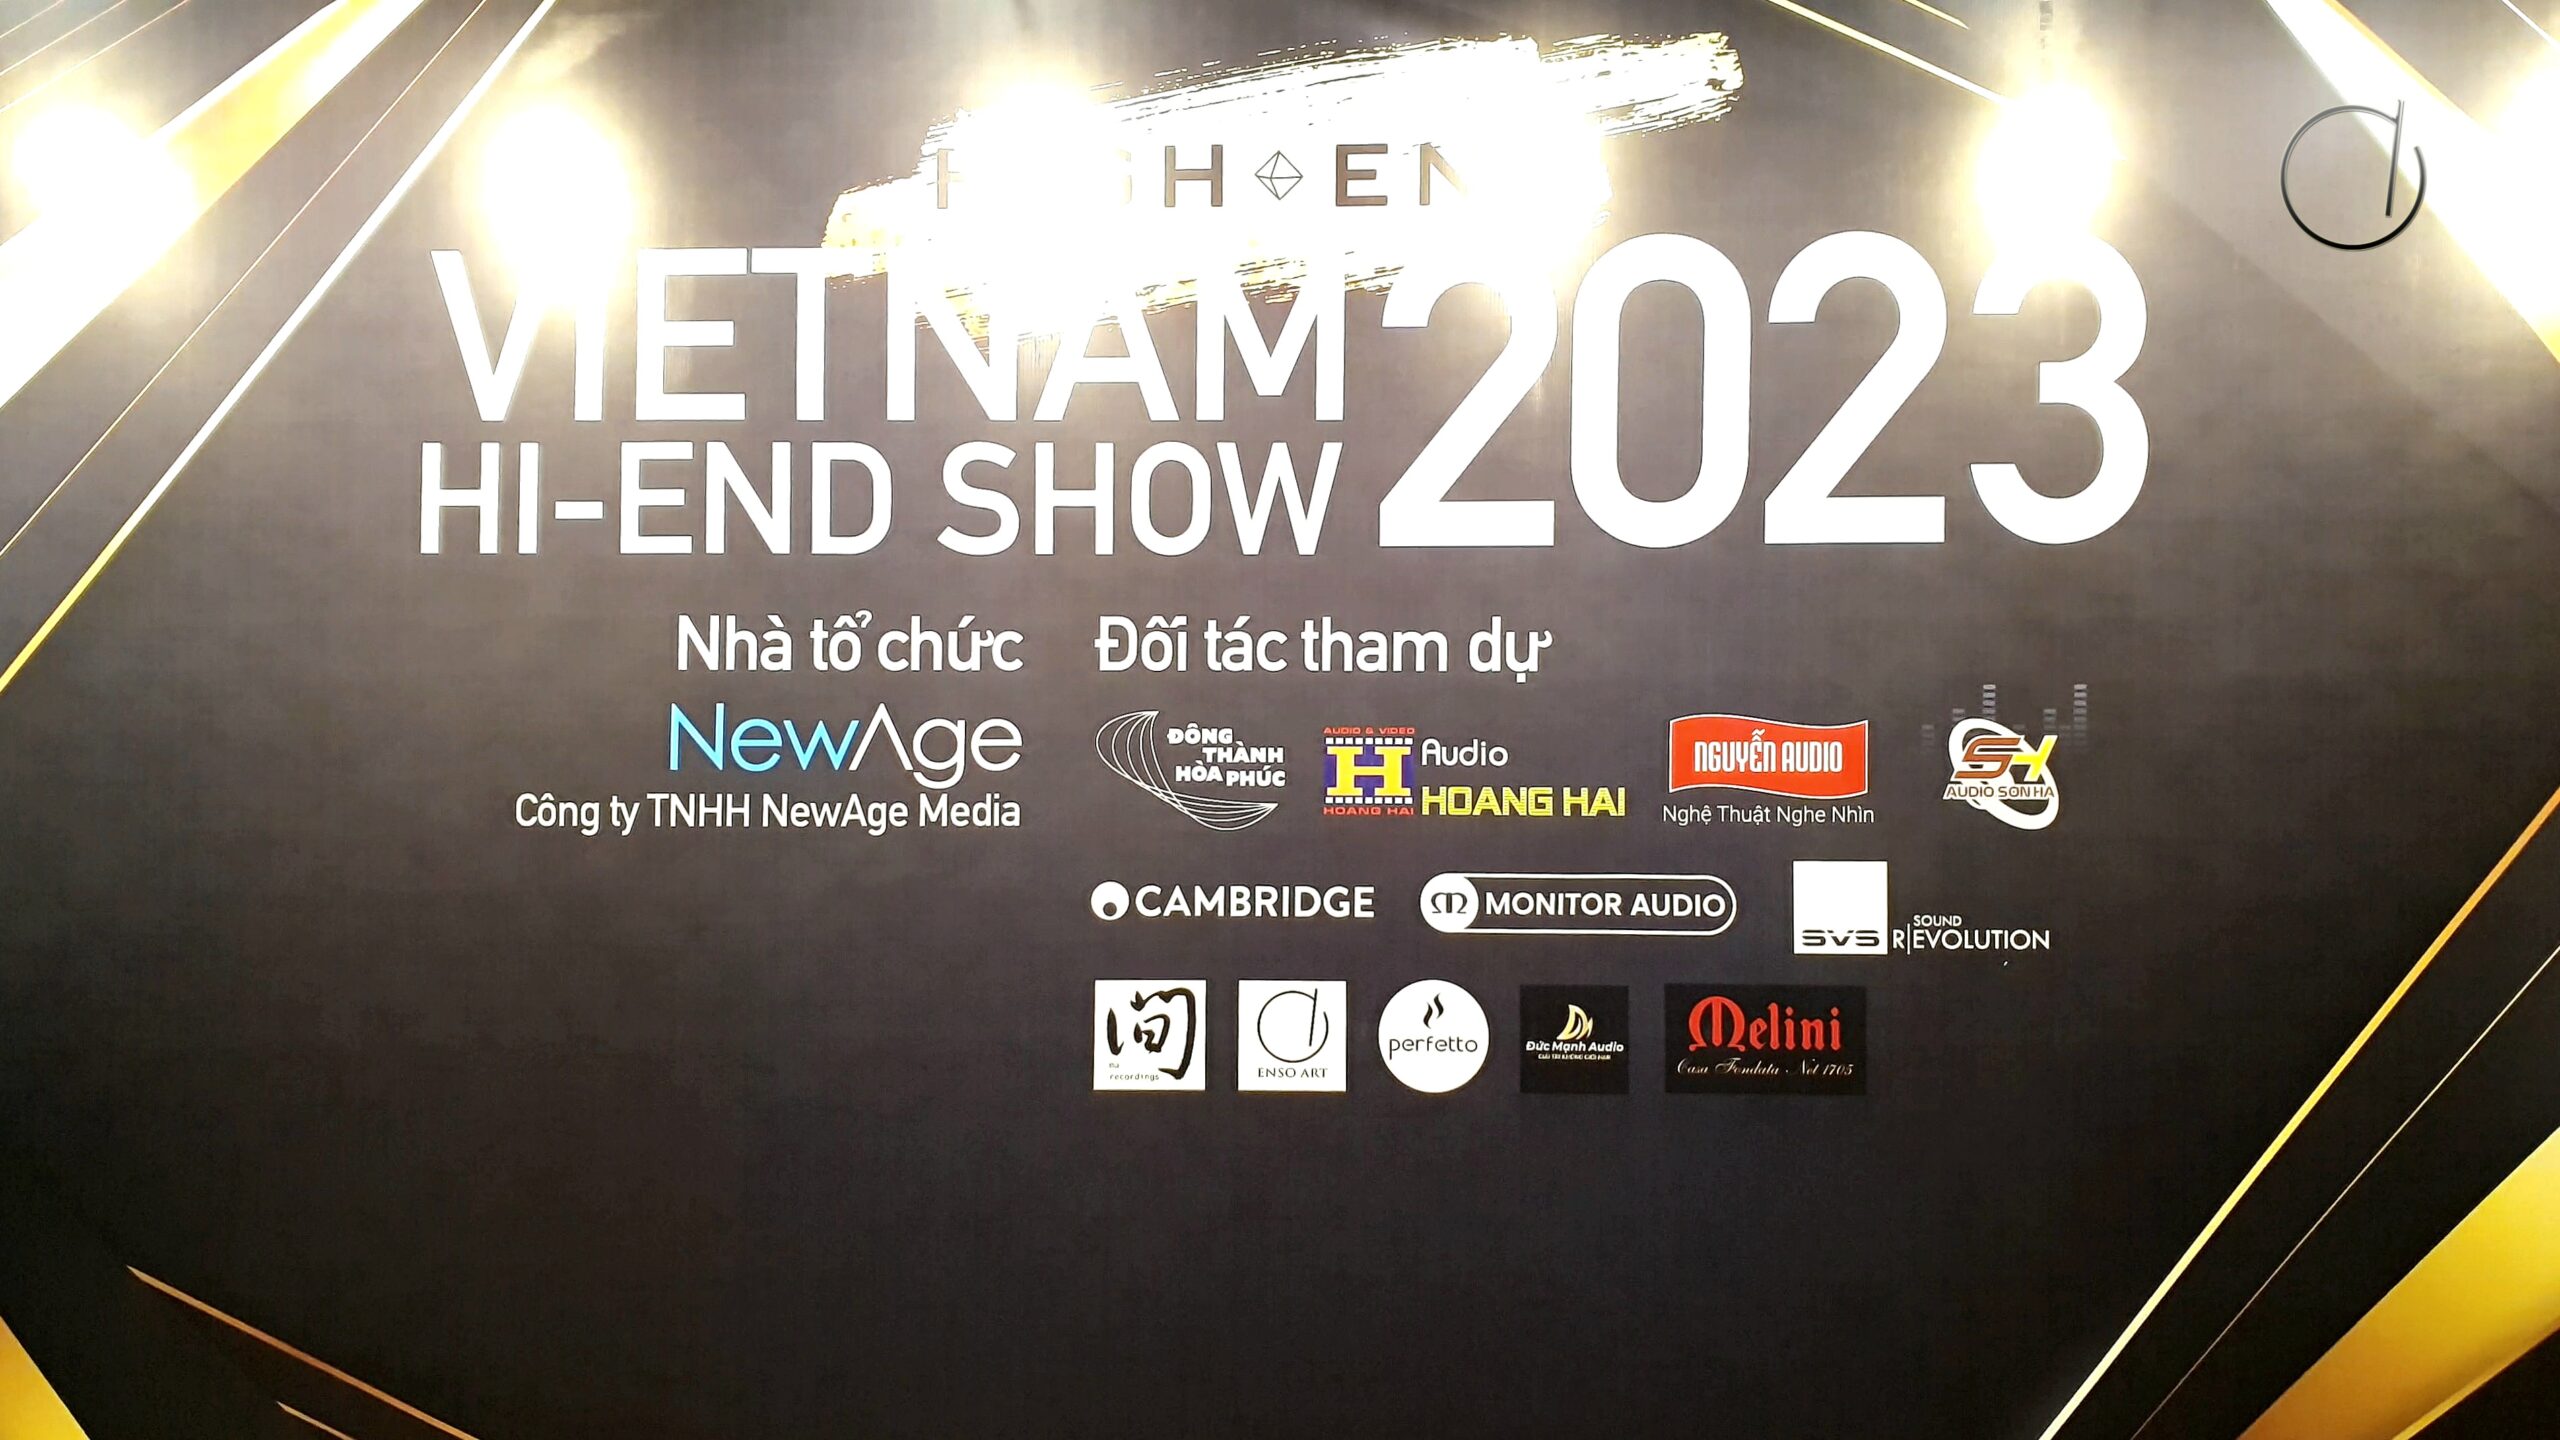 Vietnam High-end Show 2023